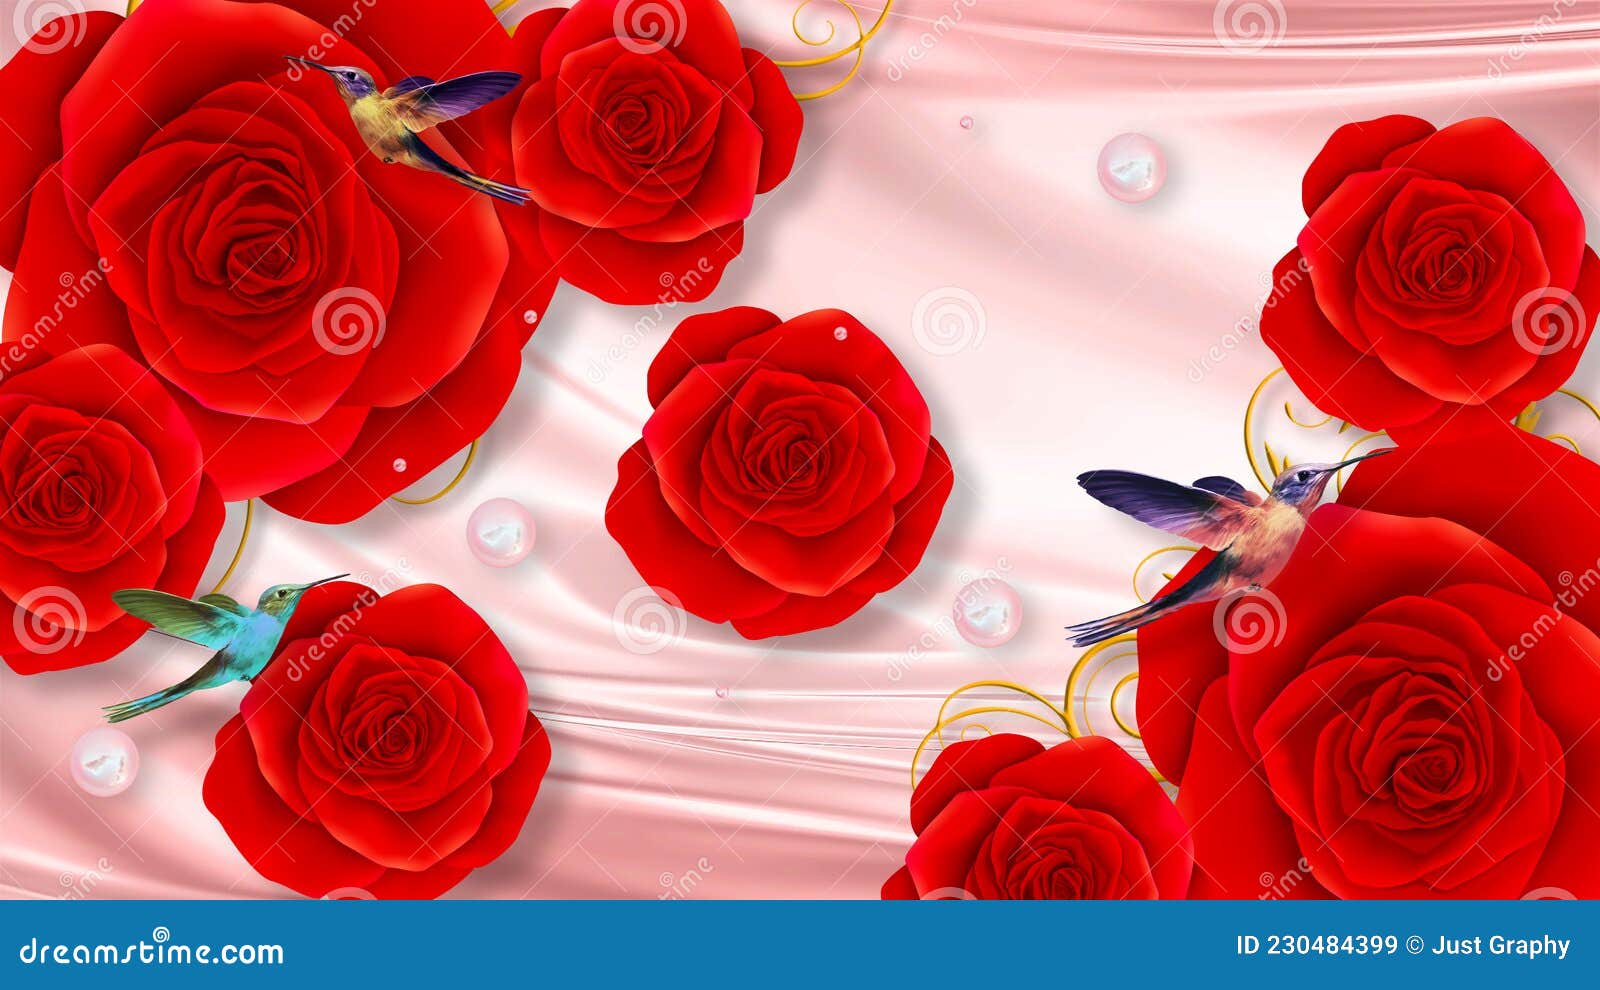 Hình nền hoa hồng đỏ sẽ làm bạn cảm thấy như rằng mình đang đi bước chân vào một vườn hoa nhiệt đới. Tác phẩm nghệ thuật sống động này sẽ đem lại cho bạn cảm nhận sự tươi trẻ và yêu đời.